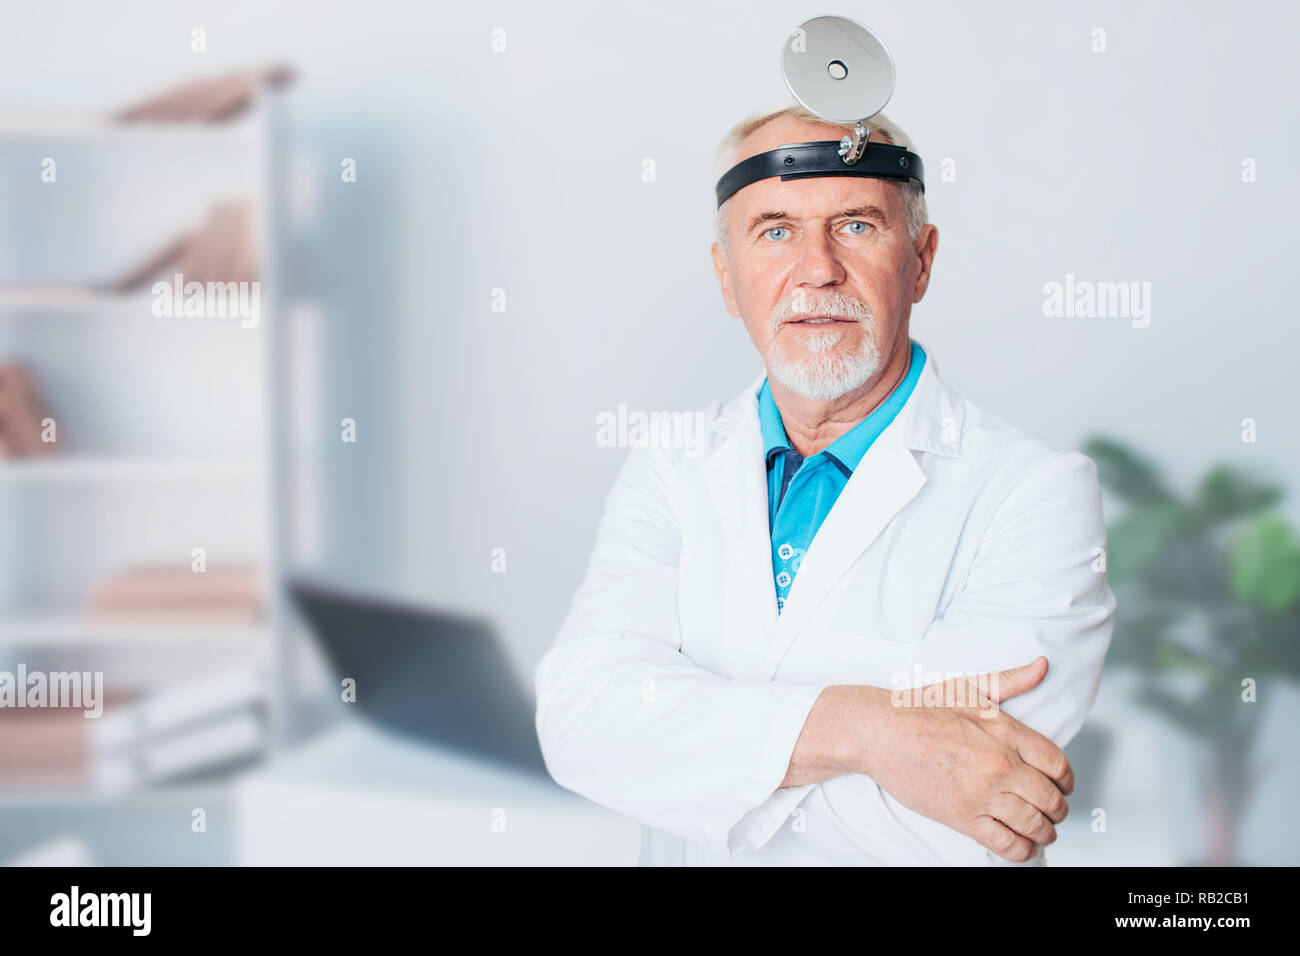 Personnes âgées, médecin ORL mature man standing at medical clinic Banque D'Images